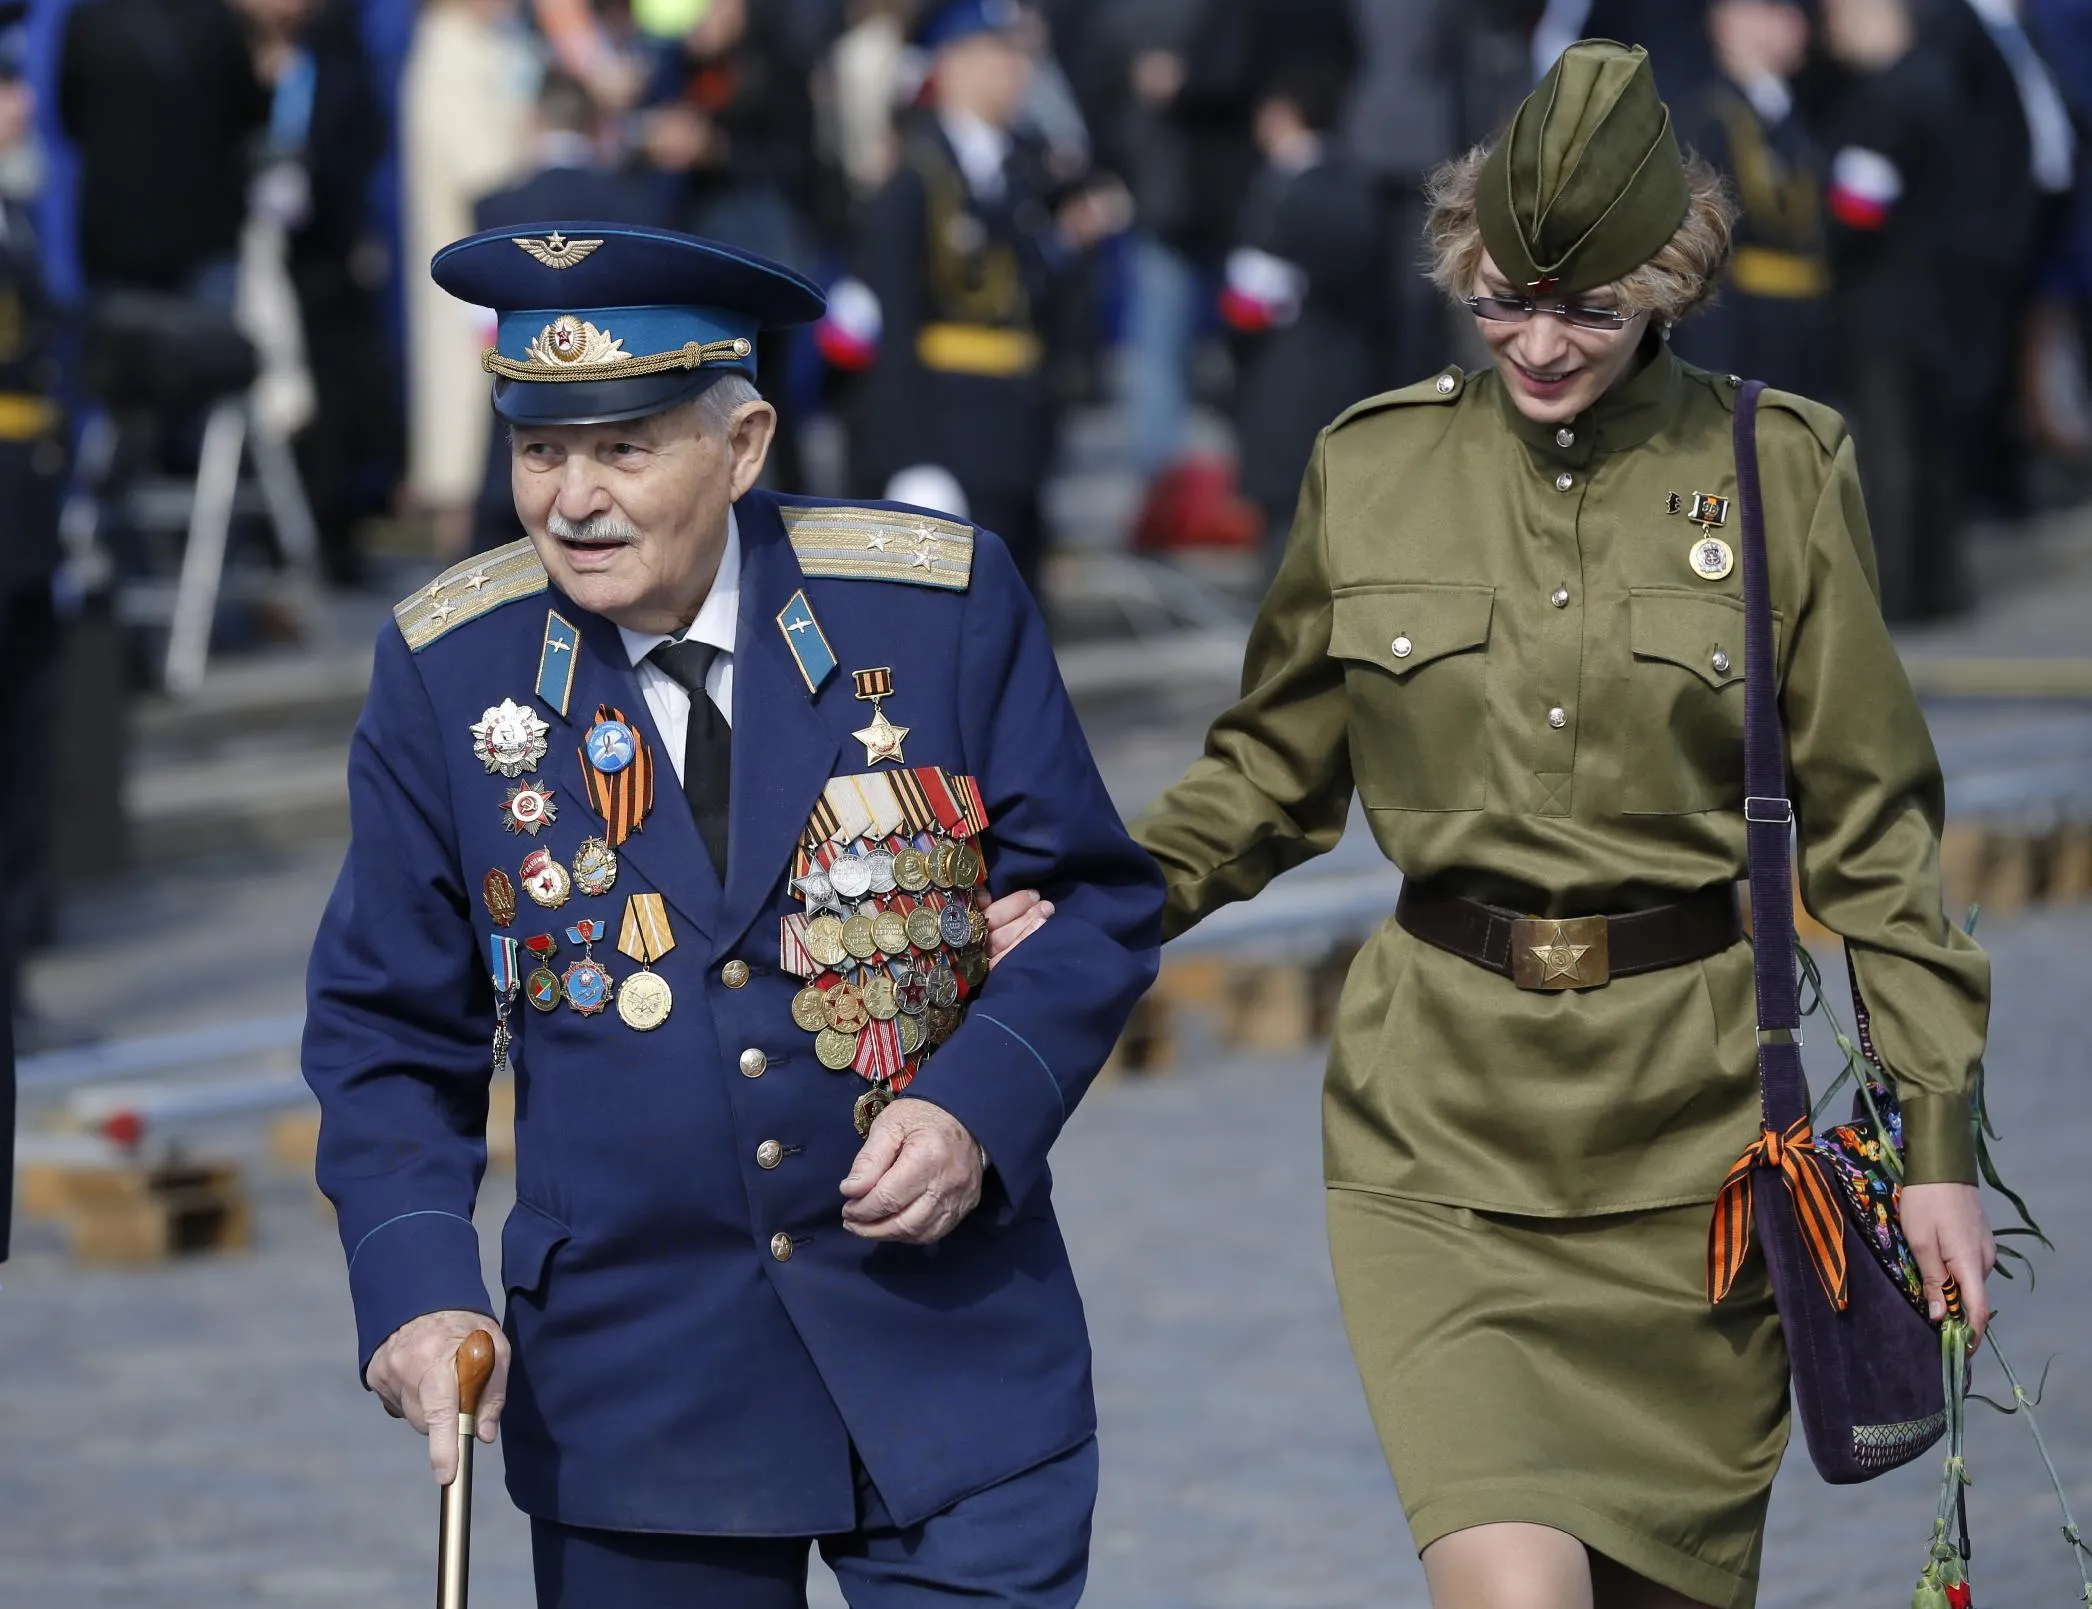 Выходим 9 мая. Празднование дня Победы. Ветераны на параде. 9 Мая ветераны. Ветераны в форме на параде.